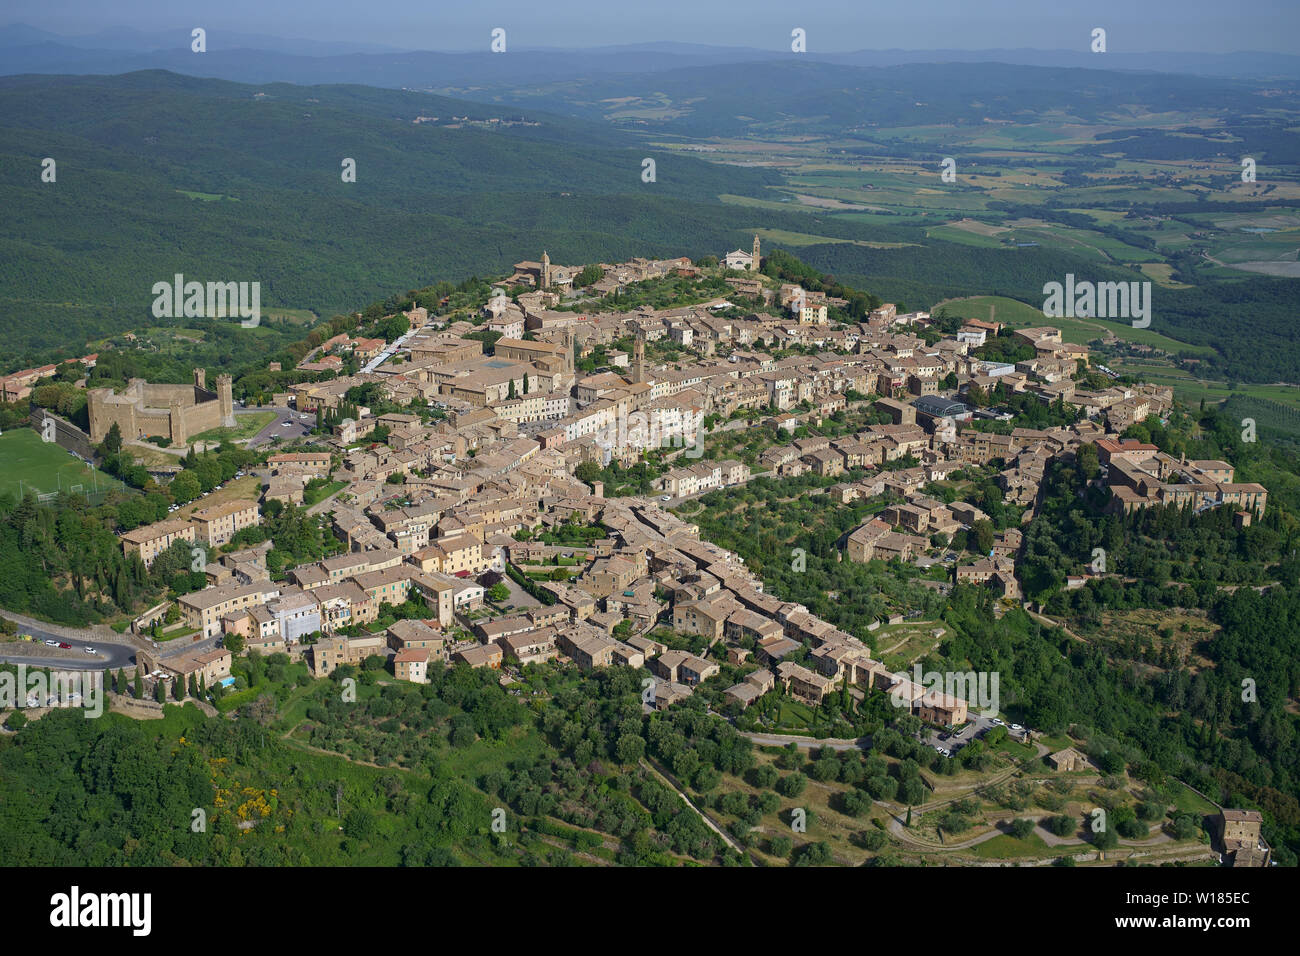 LUFTAUFNAHME. Mittelalterliche Stadt auf einem Hügel, die das Ackerland des Val d'Orcia dominiert. Montalcino, Provinz Siena, Toskana, Italien. Stockfoto